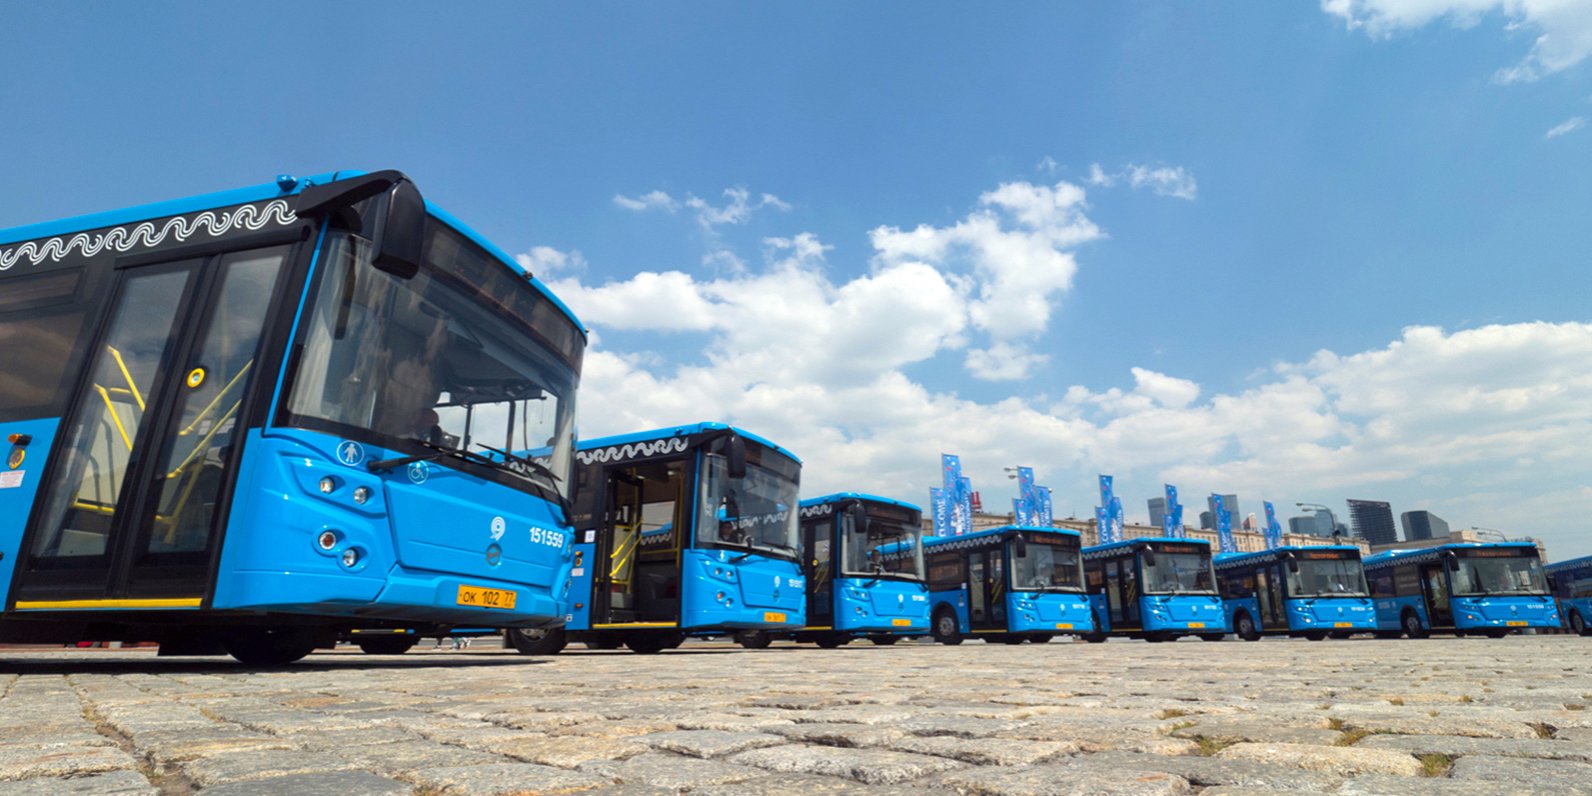 Около двух миллионов пассажиров за полгода: жители ТиНАО чаще выбирают новые автобусные маршруты